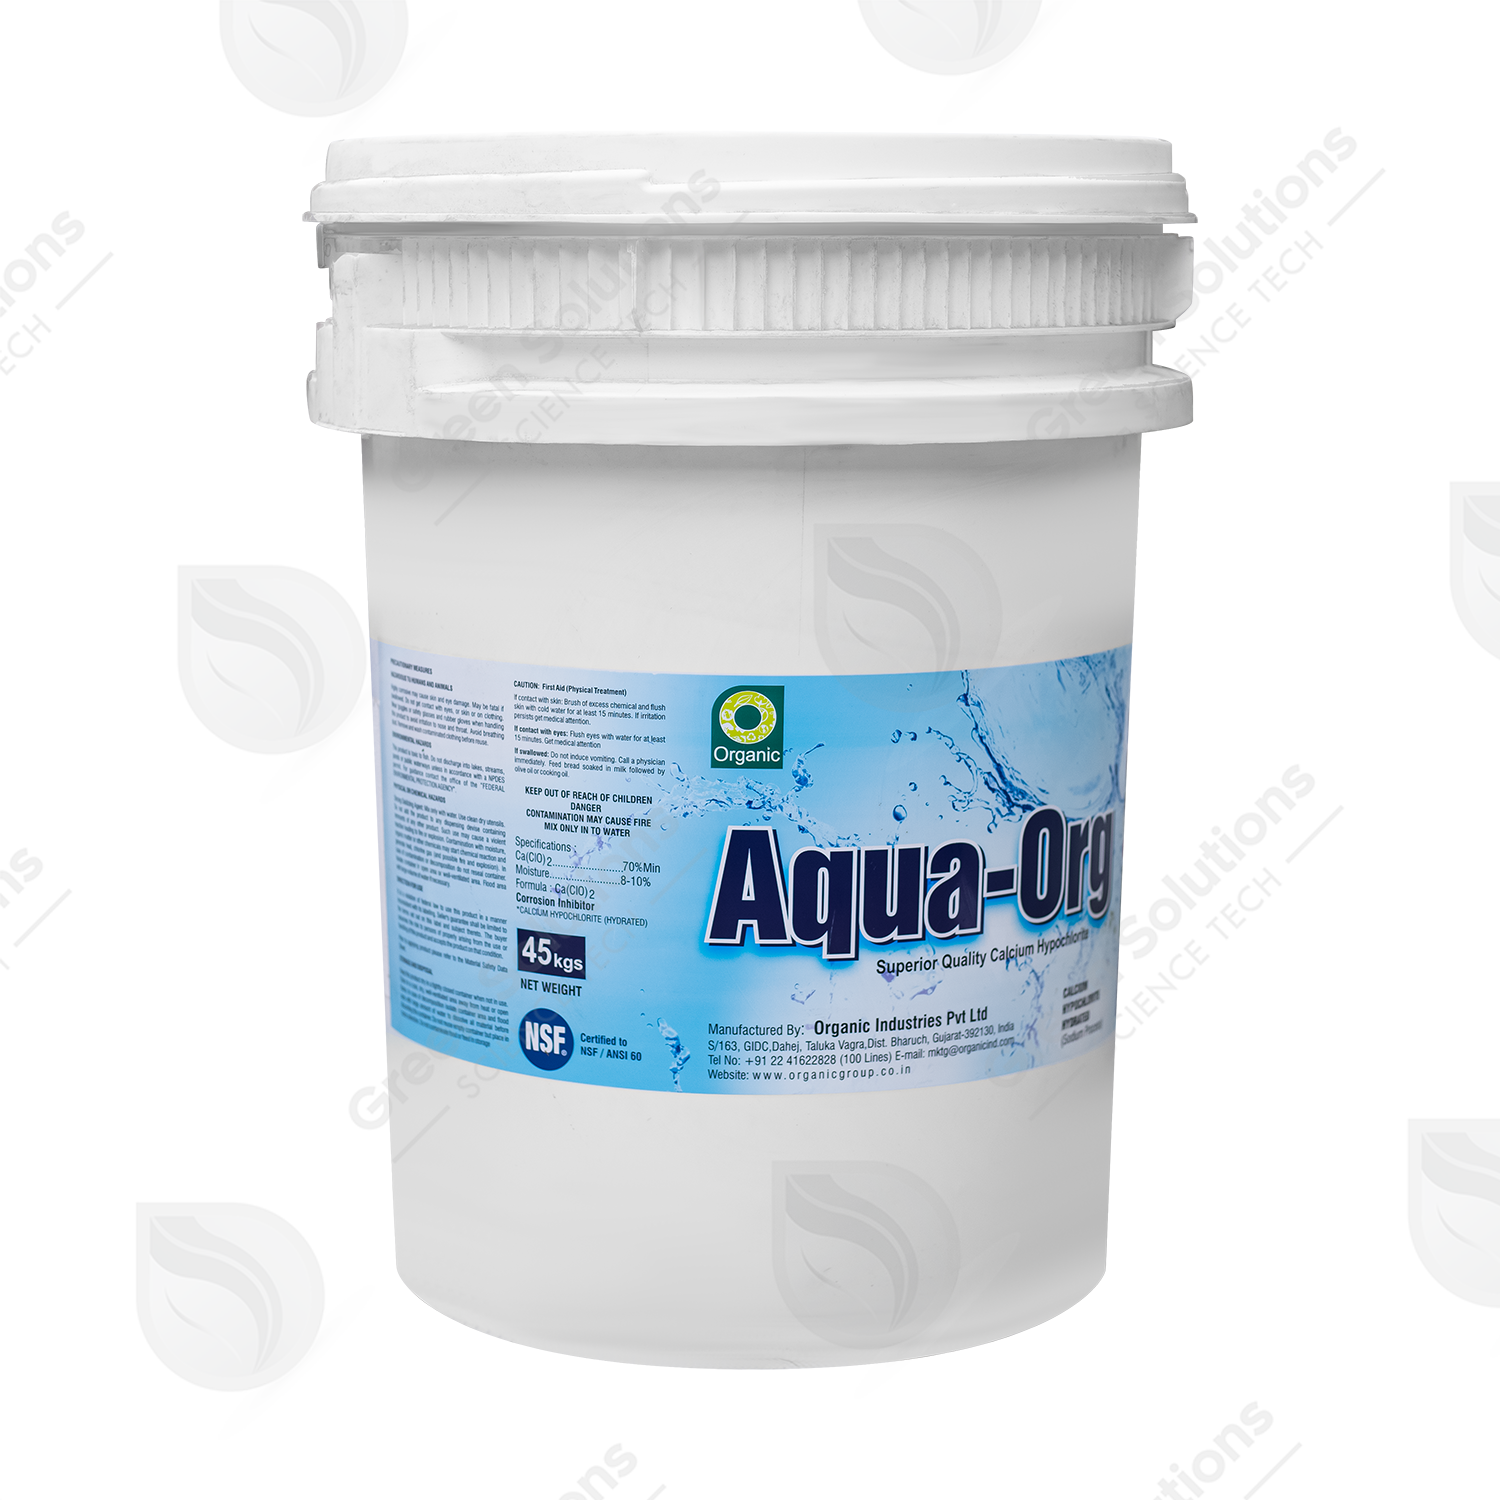 Aqua-Org 70%